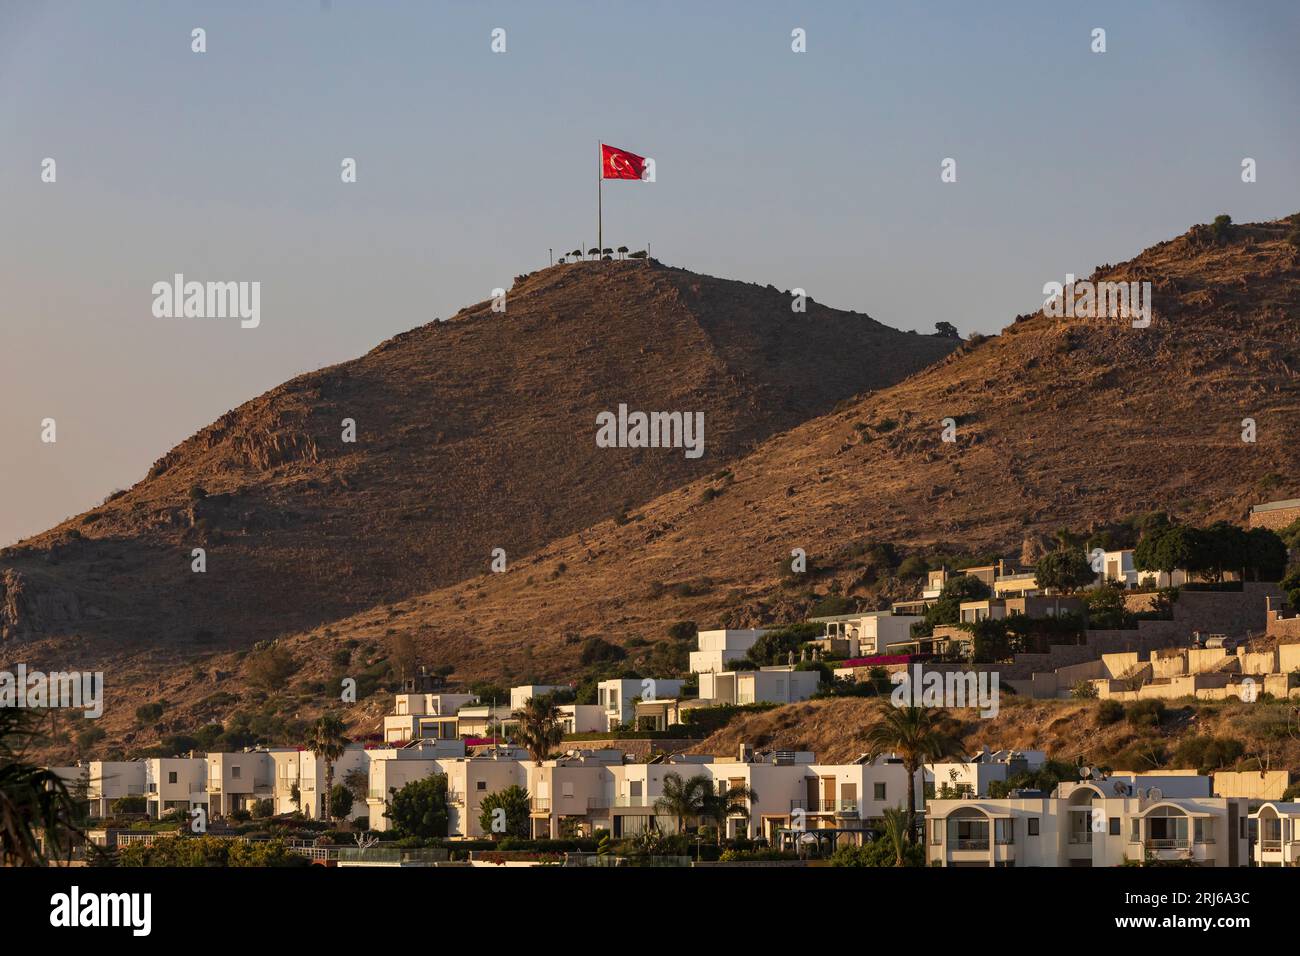 Bandera turca levantada en la cima de una colina con casas de verano unifamiliares en las laderas de Turgutreis, un centro de verano del Egeo. Foto de stock